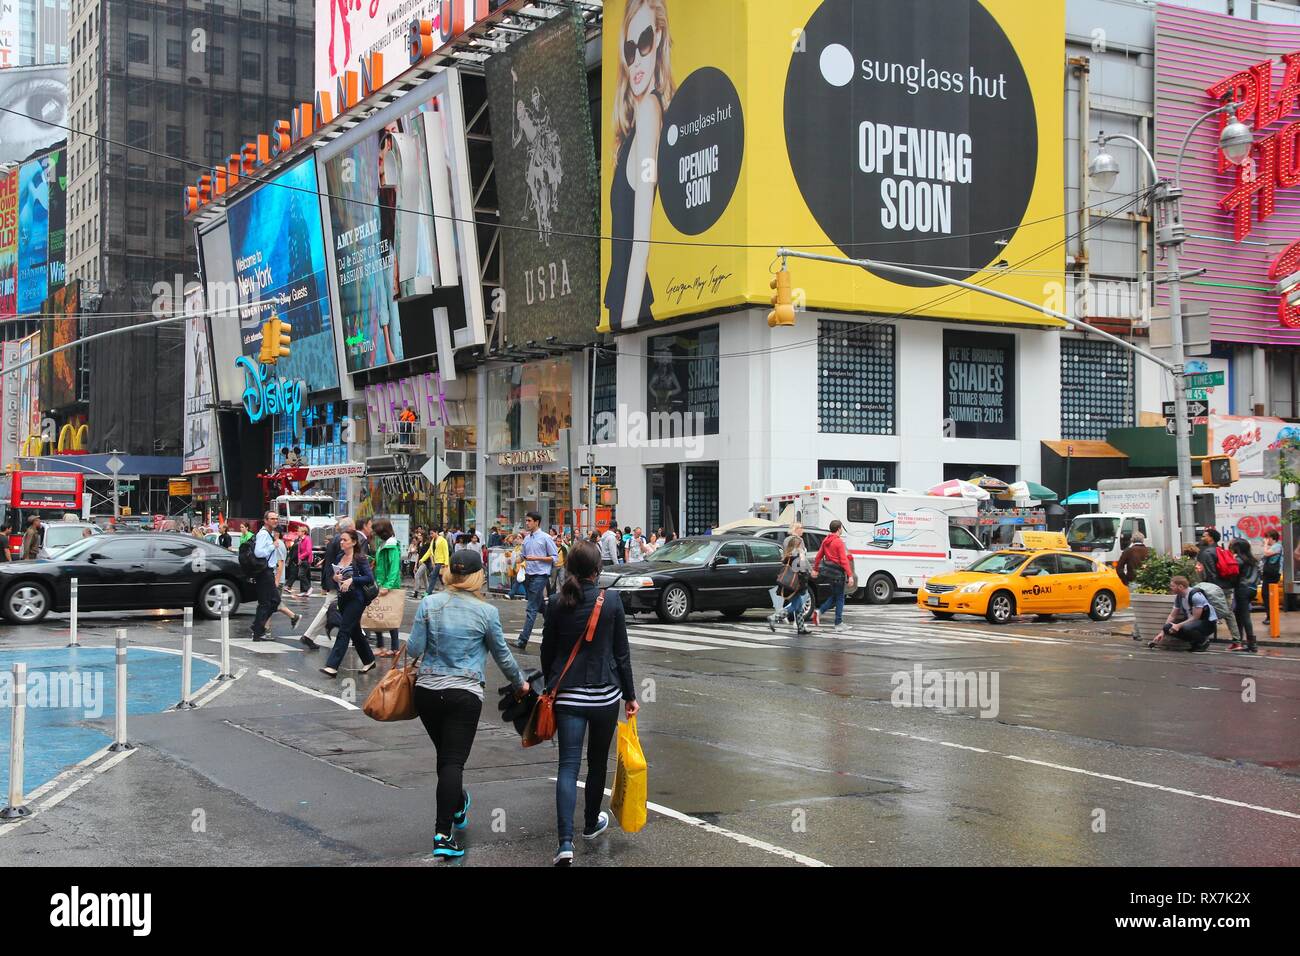 Nueva York, Estados Unidos - Junio 10, 2013: la gente visita lluvioso Times Square, NY. Times Square es uno de los lugares más reconocidos en el mundo. Más de 300.000 púb Foto de stock